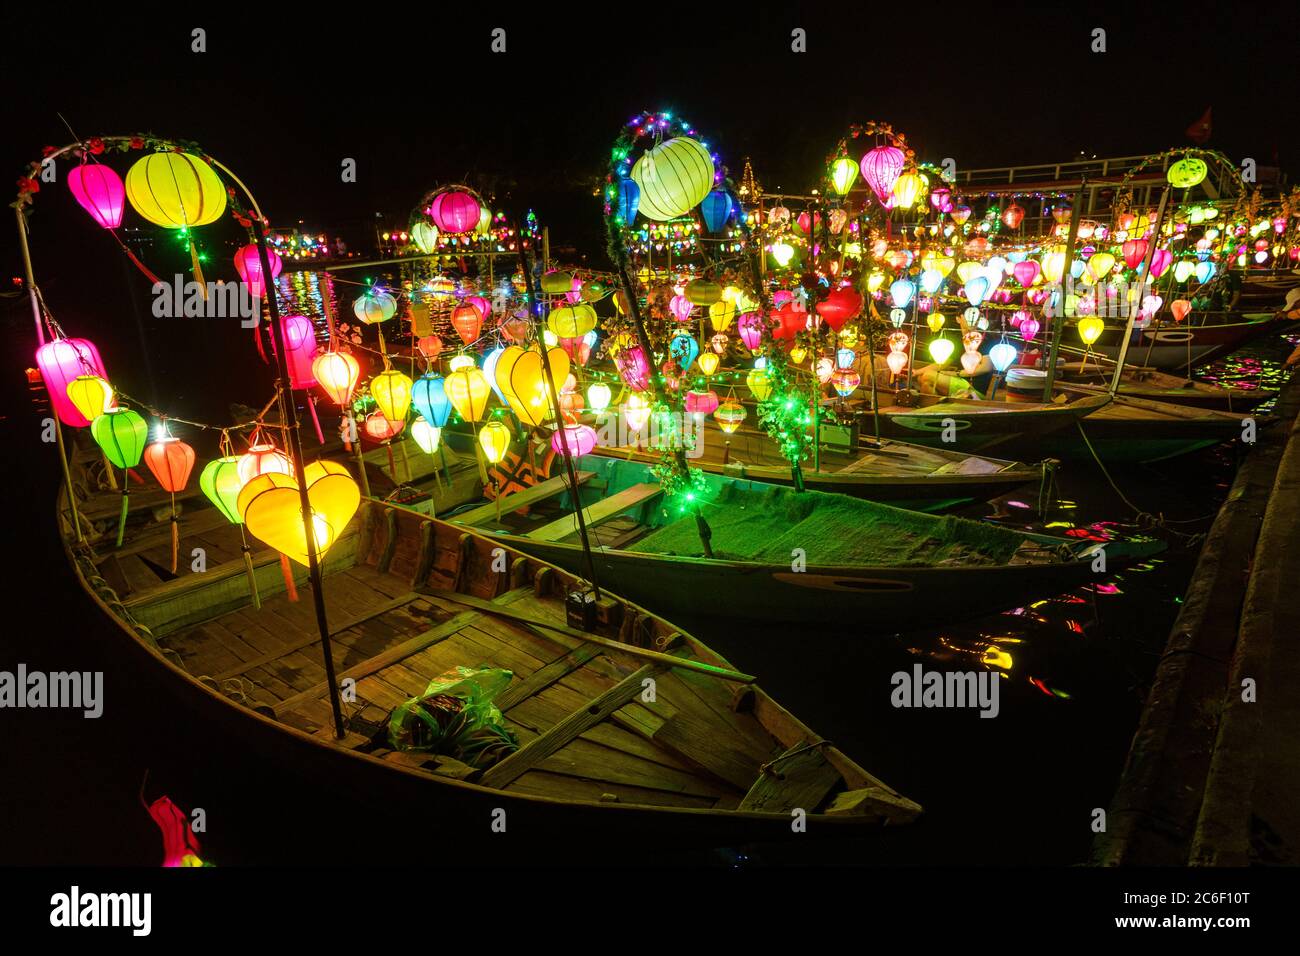 Asiatisches Boot mit farbigen chinesischen Laternen, die nachts im Wasser sein Licht reflektieren Stockfoto